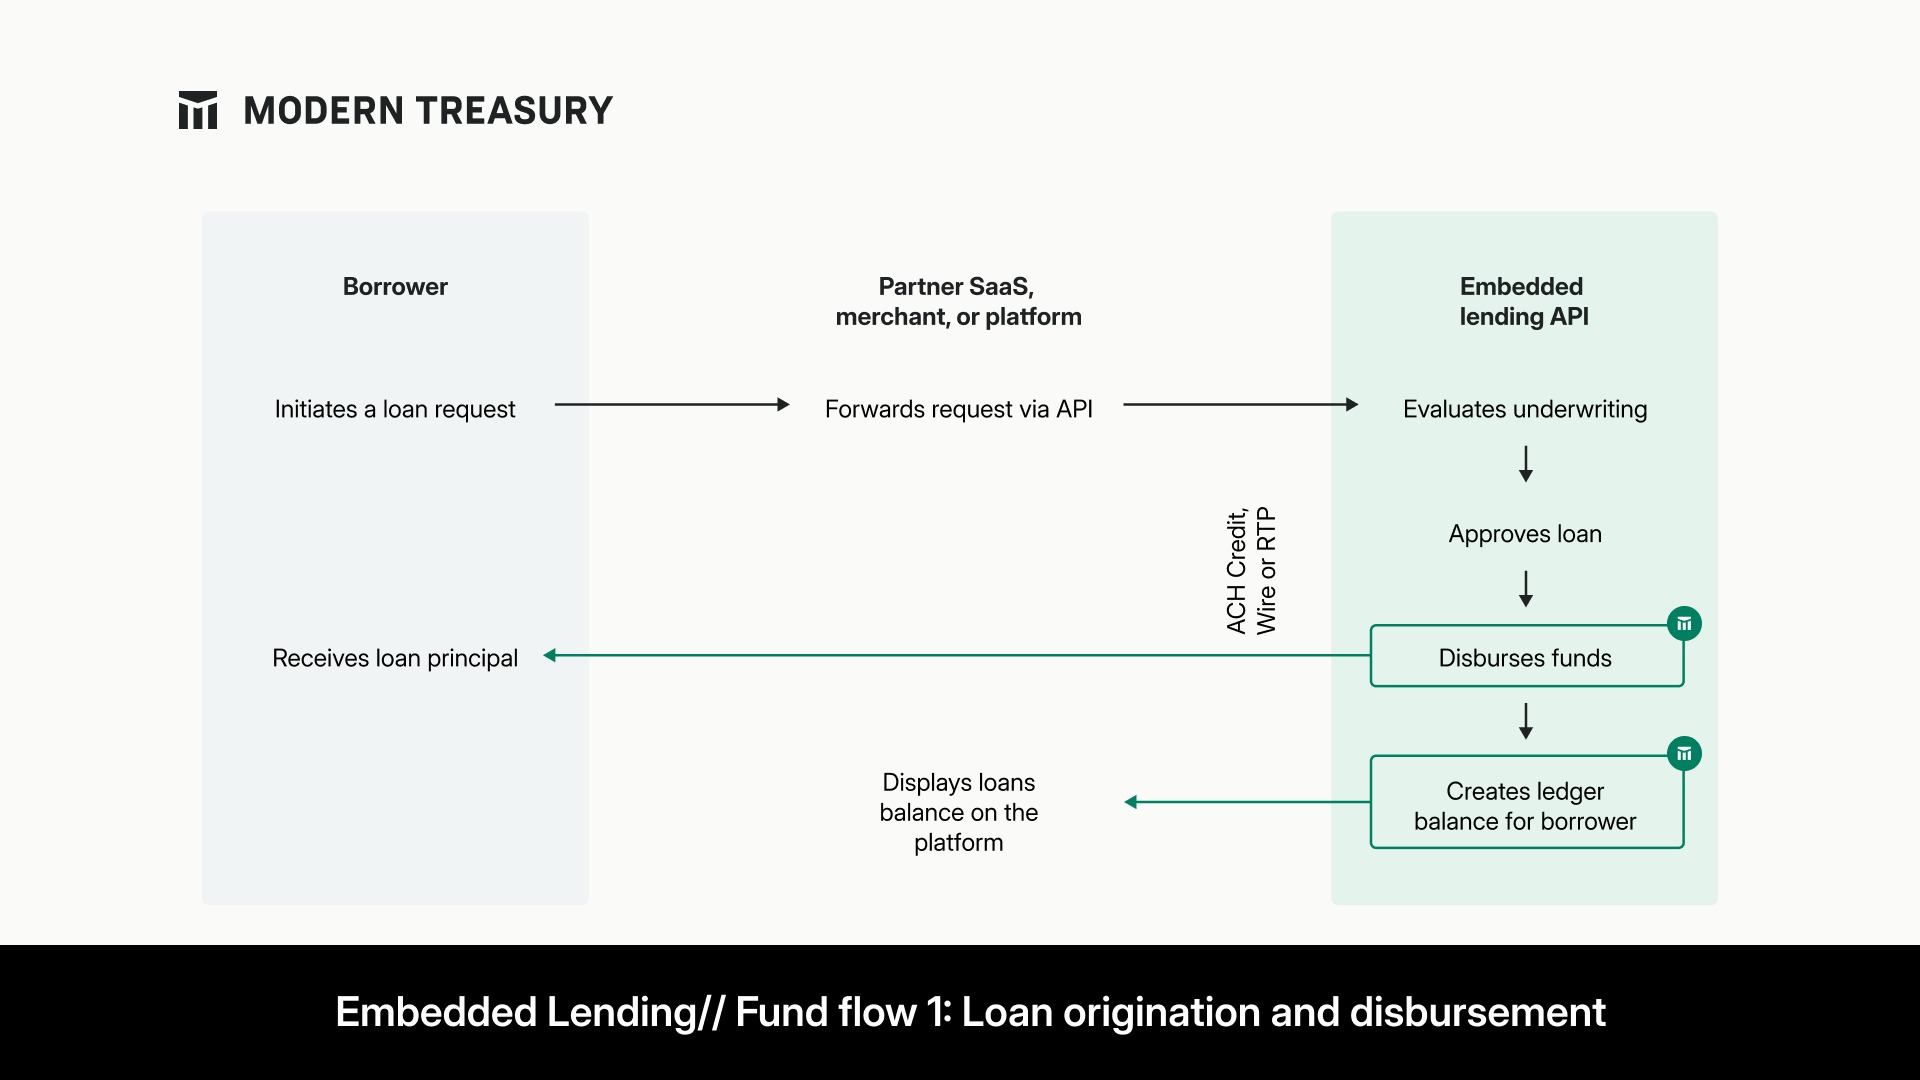 An embedded lending fund flow: Loan origination and disbursement